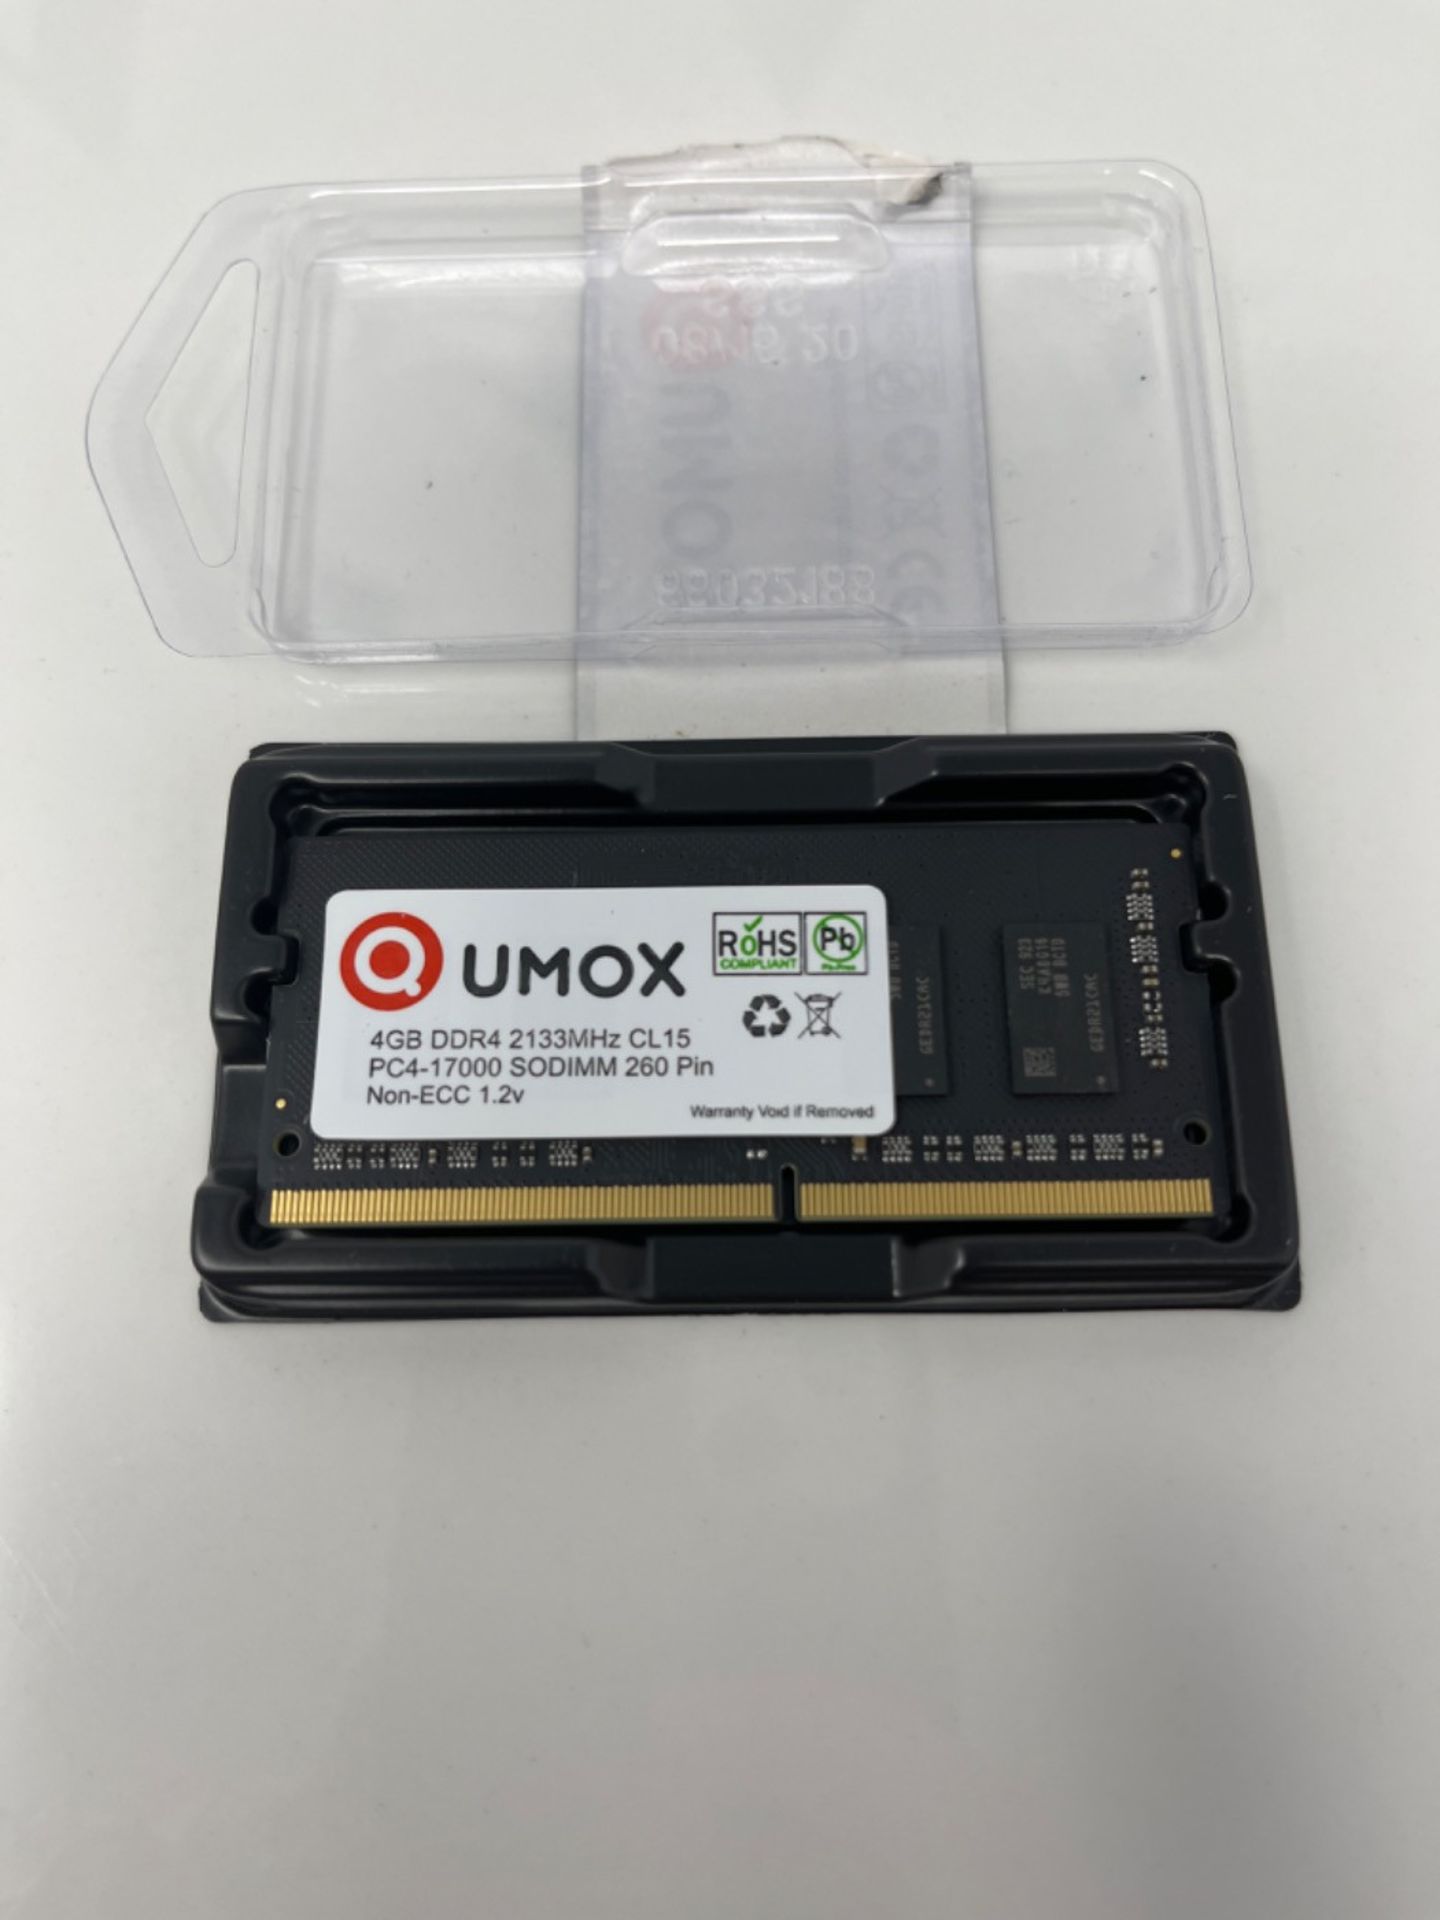 Qumox 4GB DDR4 2133 2133MHz PC4-17000 PC-17000 (260 PIN) SODIMM MEMORY 4GB - Image 2 of 2